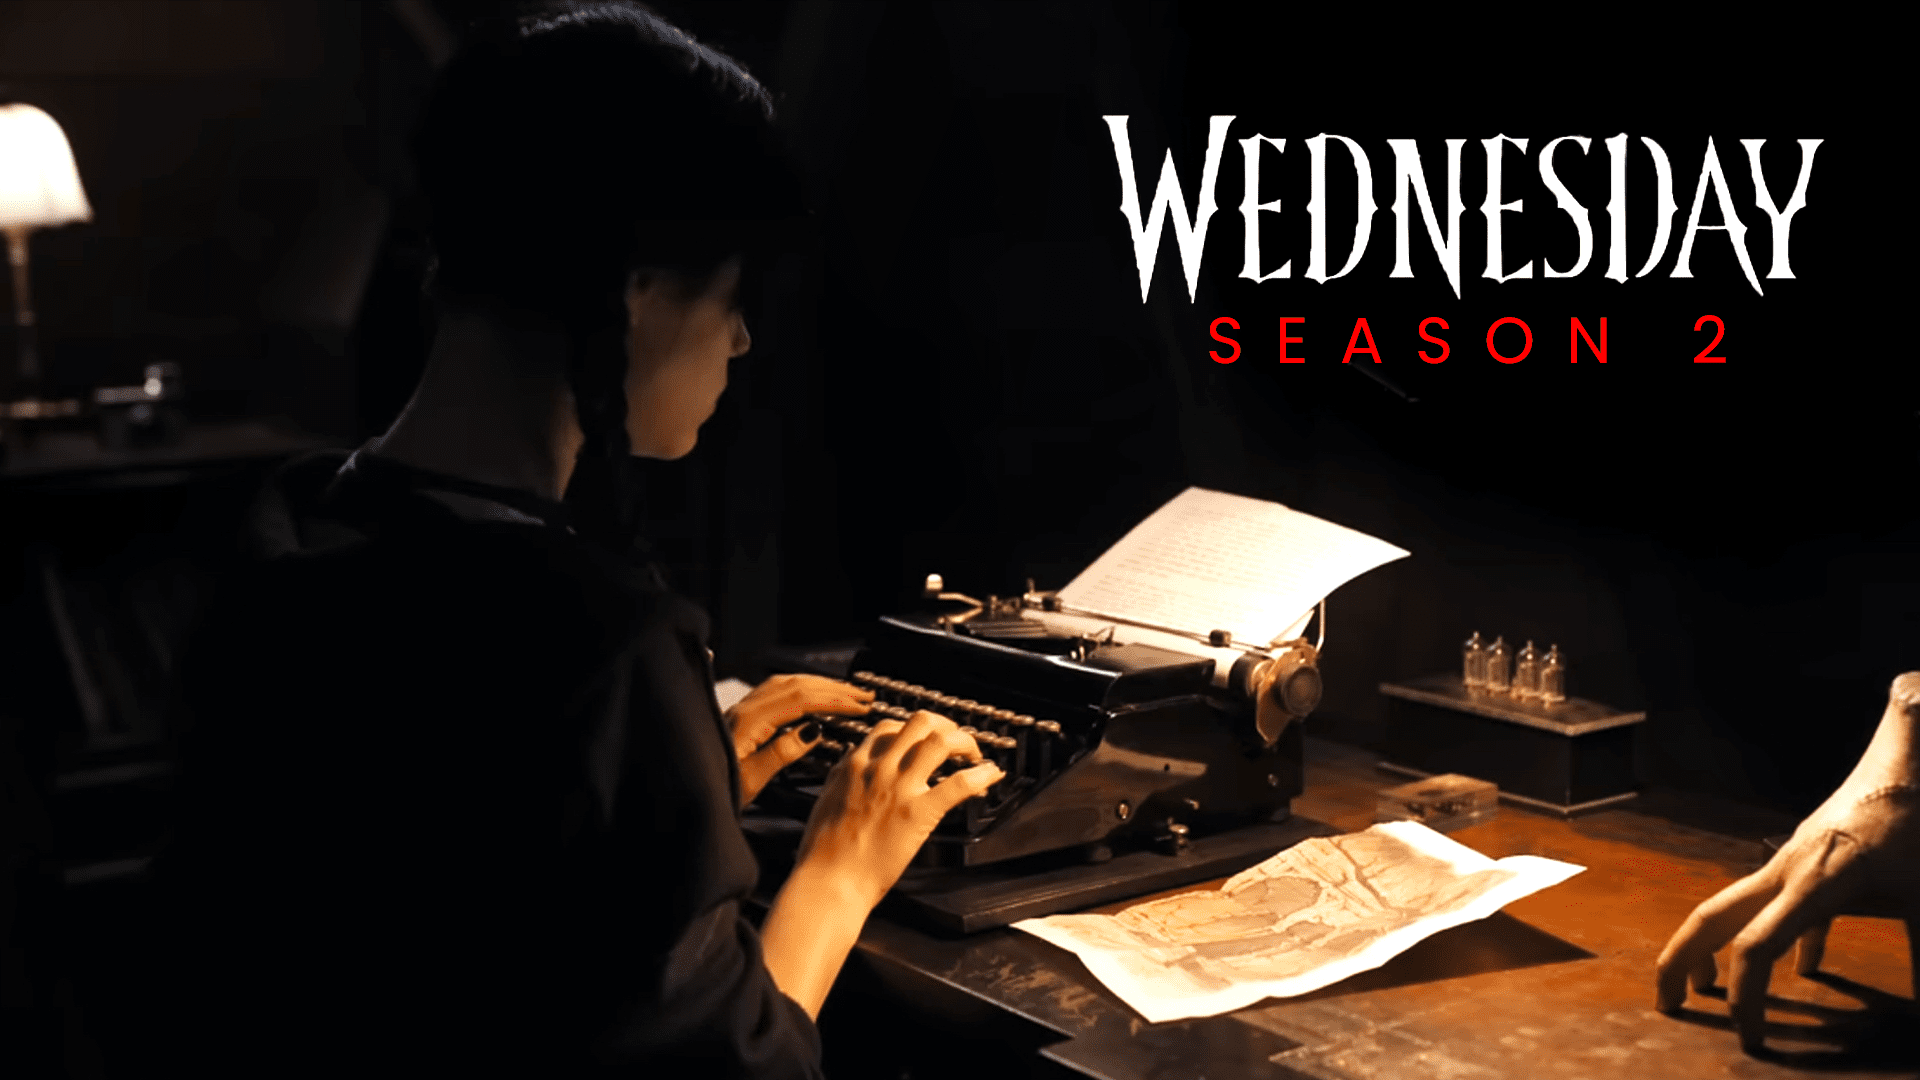 Wednesday season 2 premiere release date